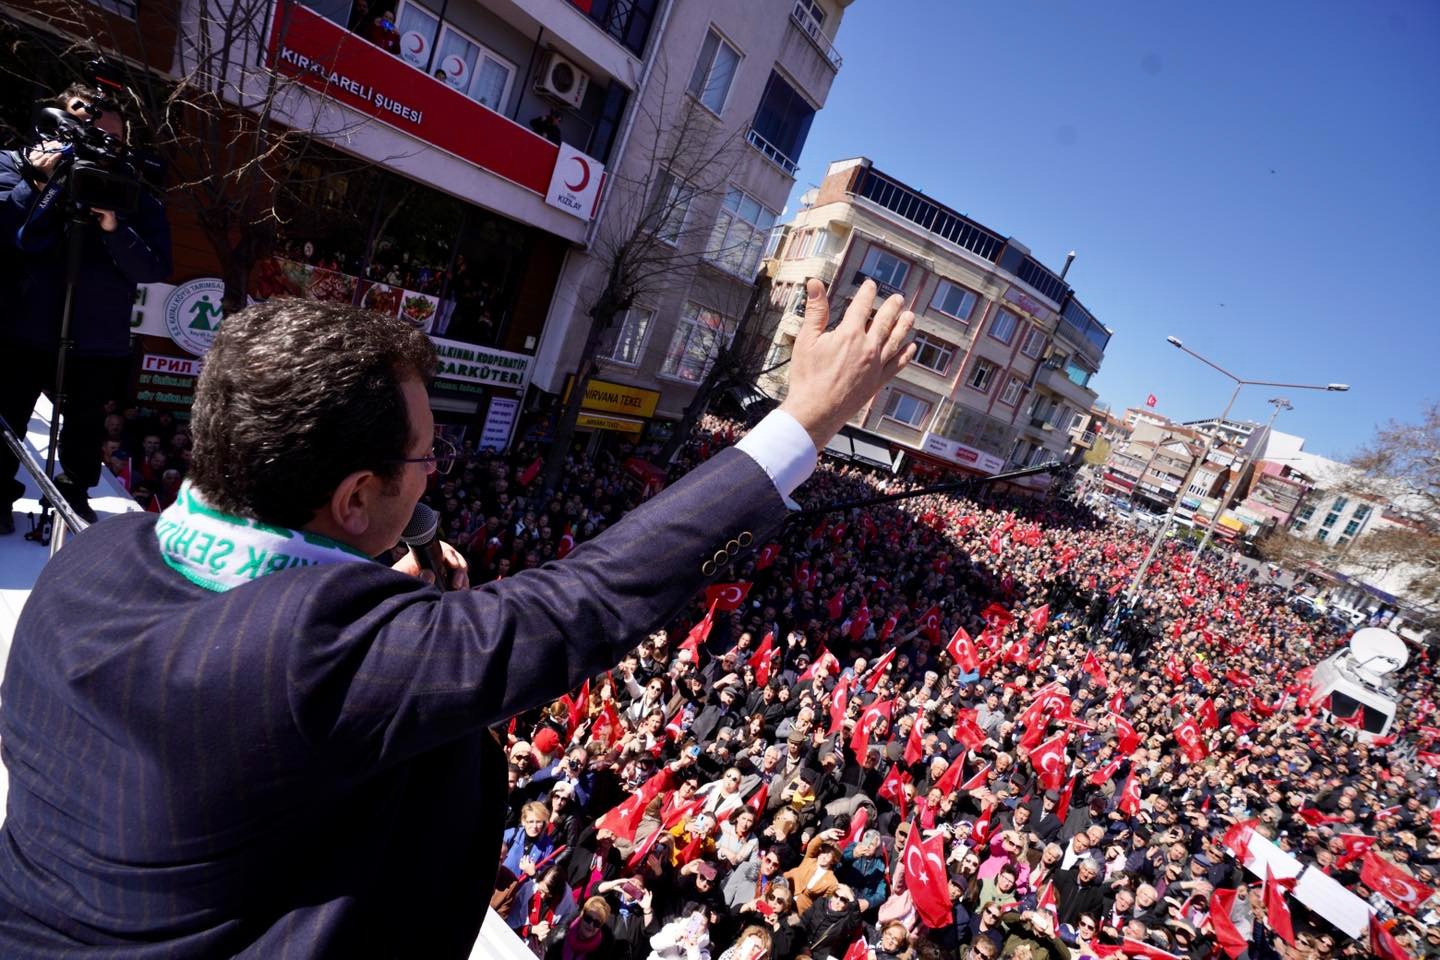 İmamoğlu, Kırklareli Cumhuriyet Meydanı’nda konuştu! 86 milyon iktidar olsun, her şey çok güzel olsun